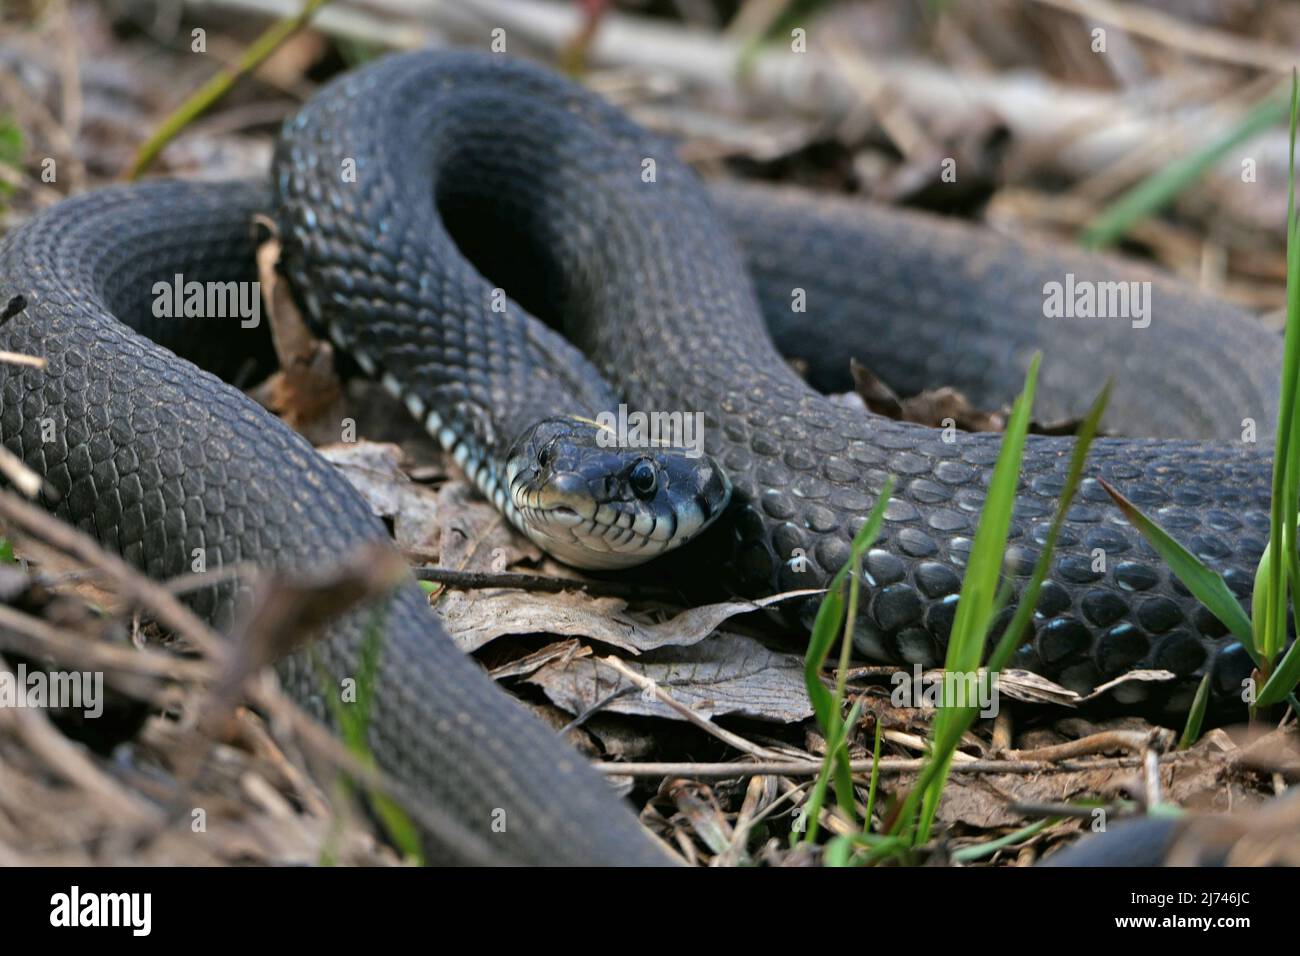 Eine Schlange, eine große Schlange im Frühlingswald, in trockenem Gras in ihrem natürlichen Lebensraum, die sich in der Sonne sonnt. Stockfoto